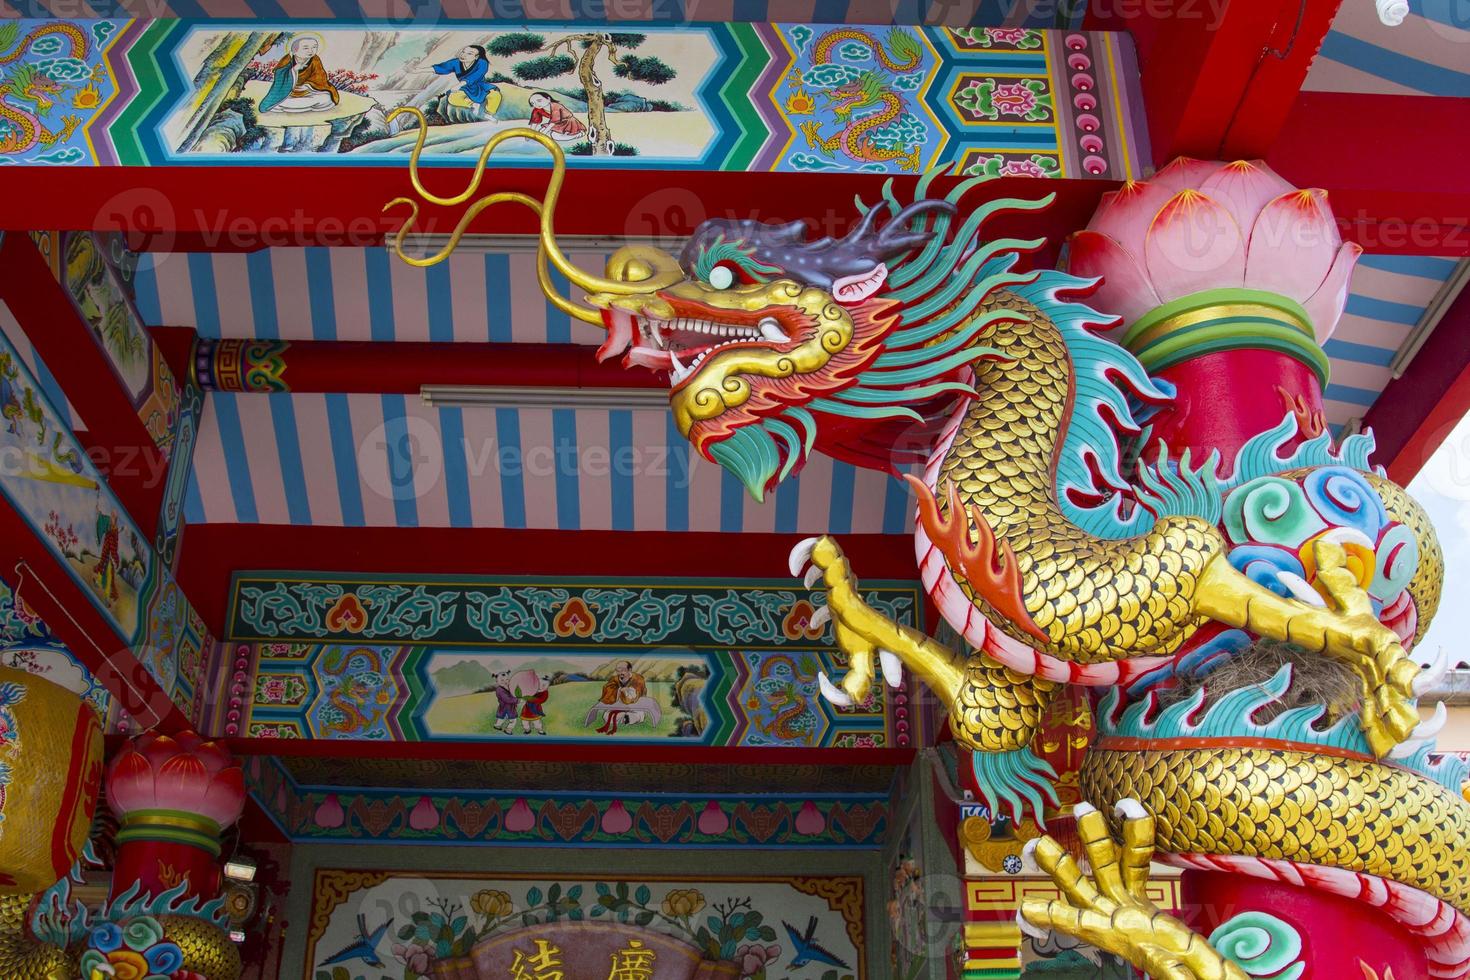 estátuas de dragão, uma criatura mítica na literatura chinesa, são frequentemente decoradas em templos e no telhado como belas esculturas e céus azuis. foto